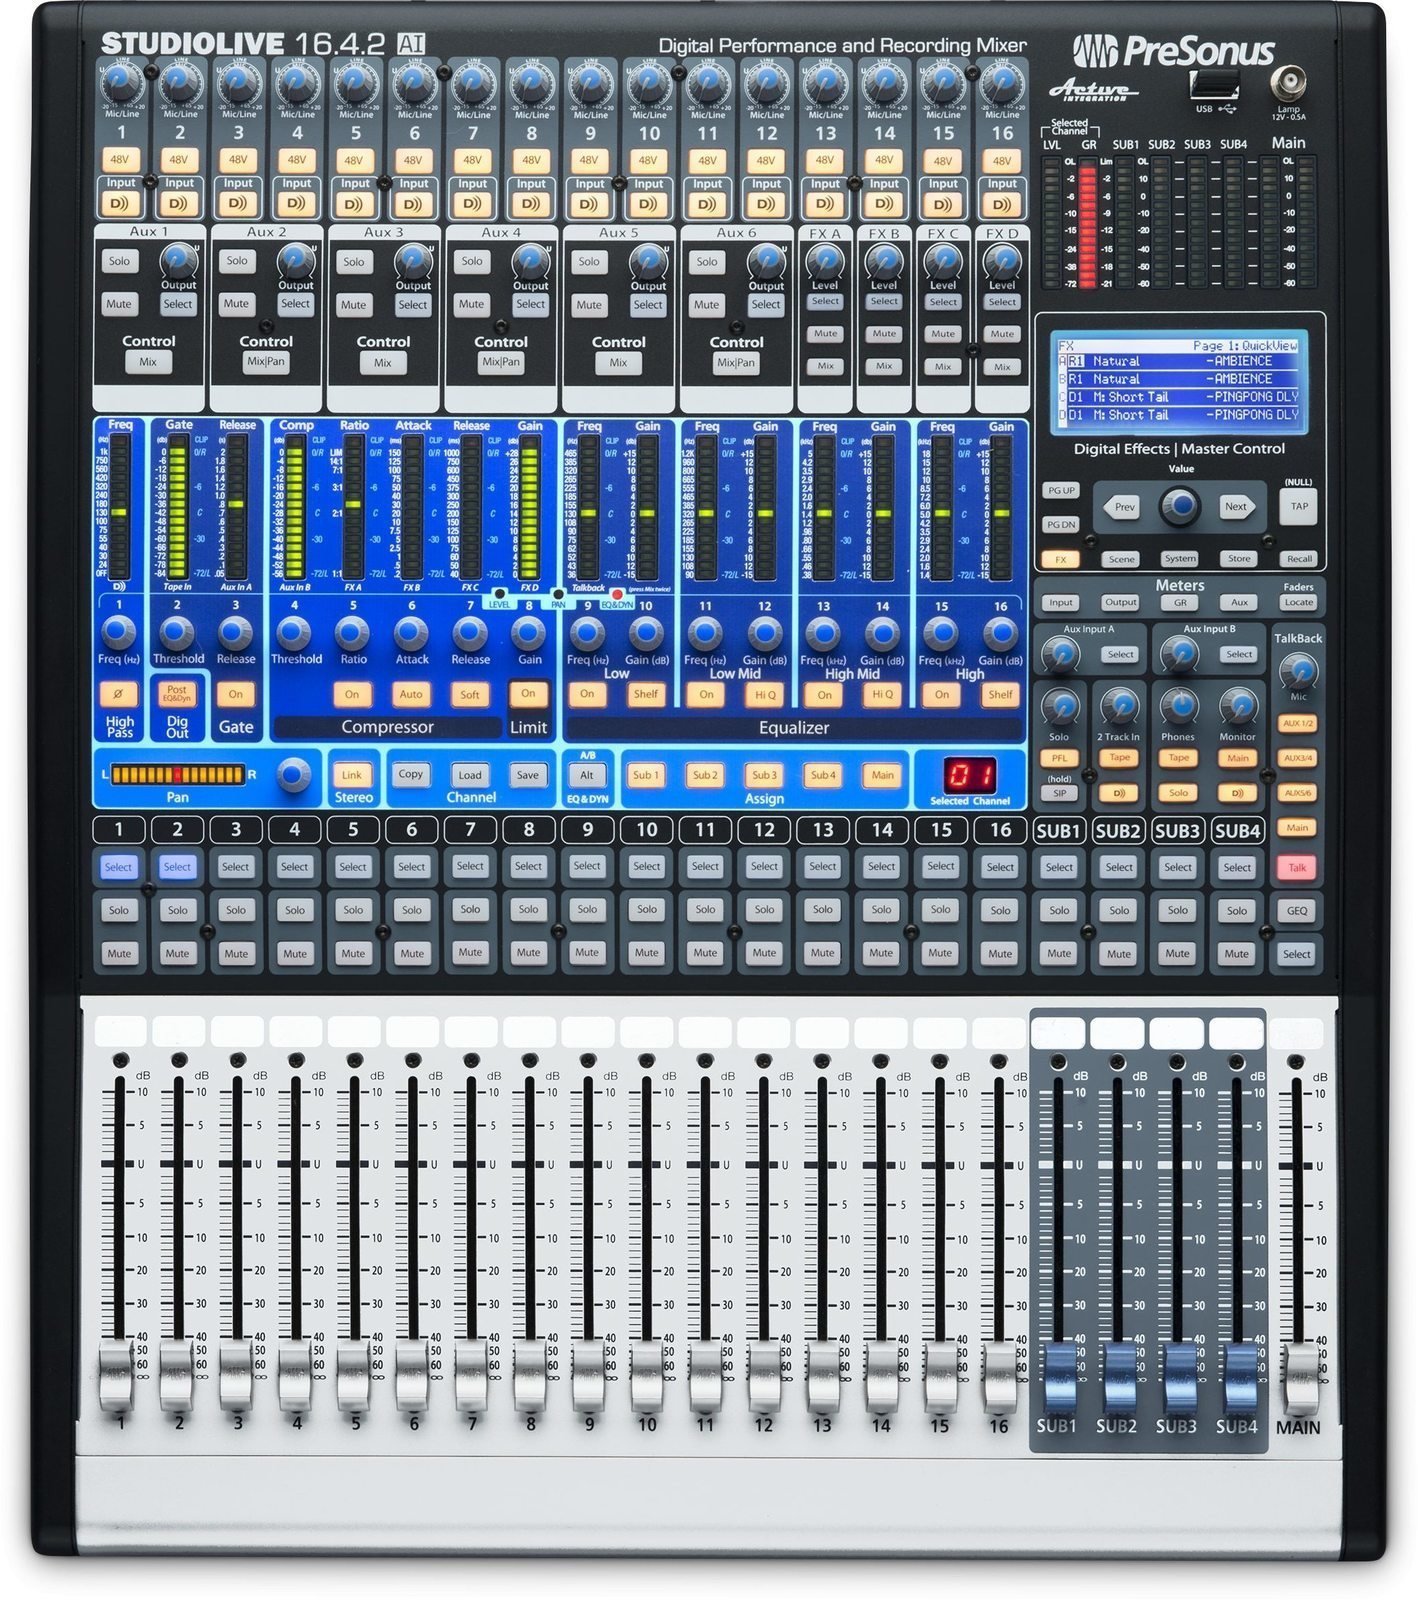 Digital Mixer Presonus StudioLive 16.4.2AI